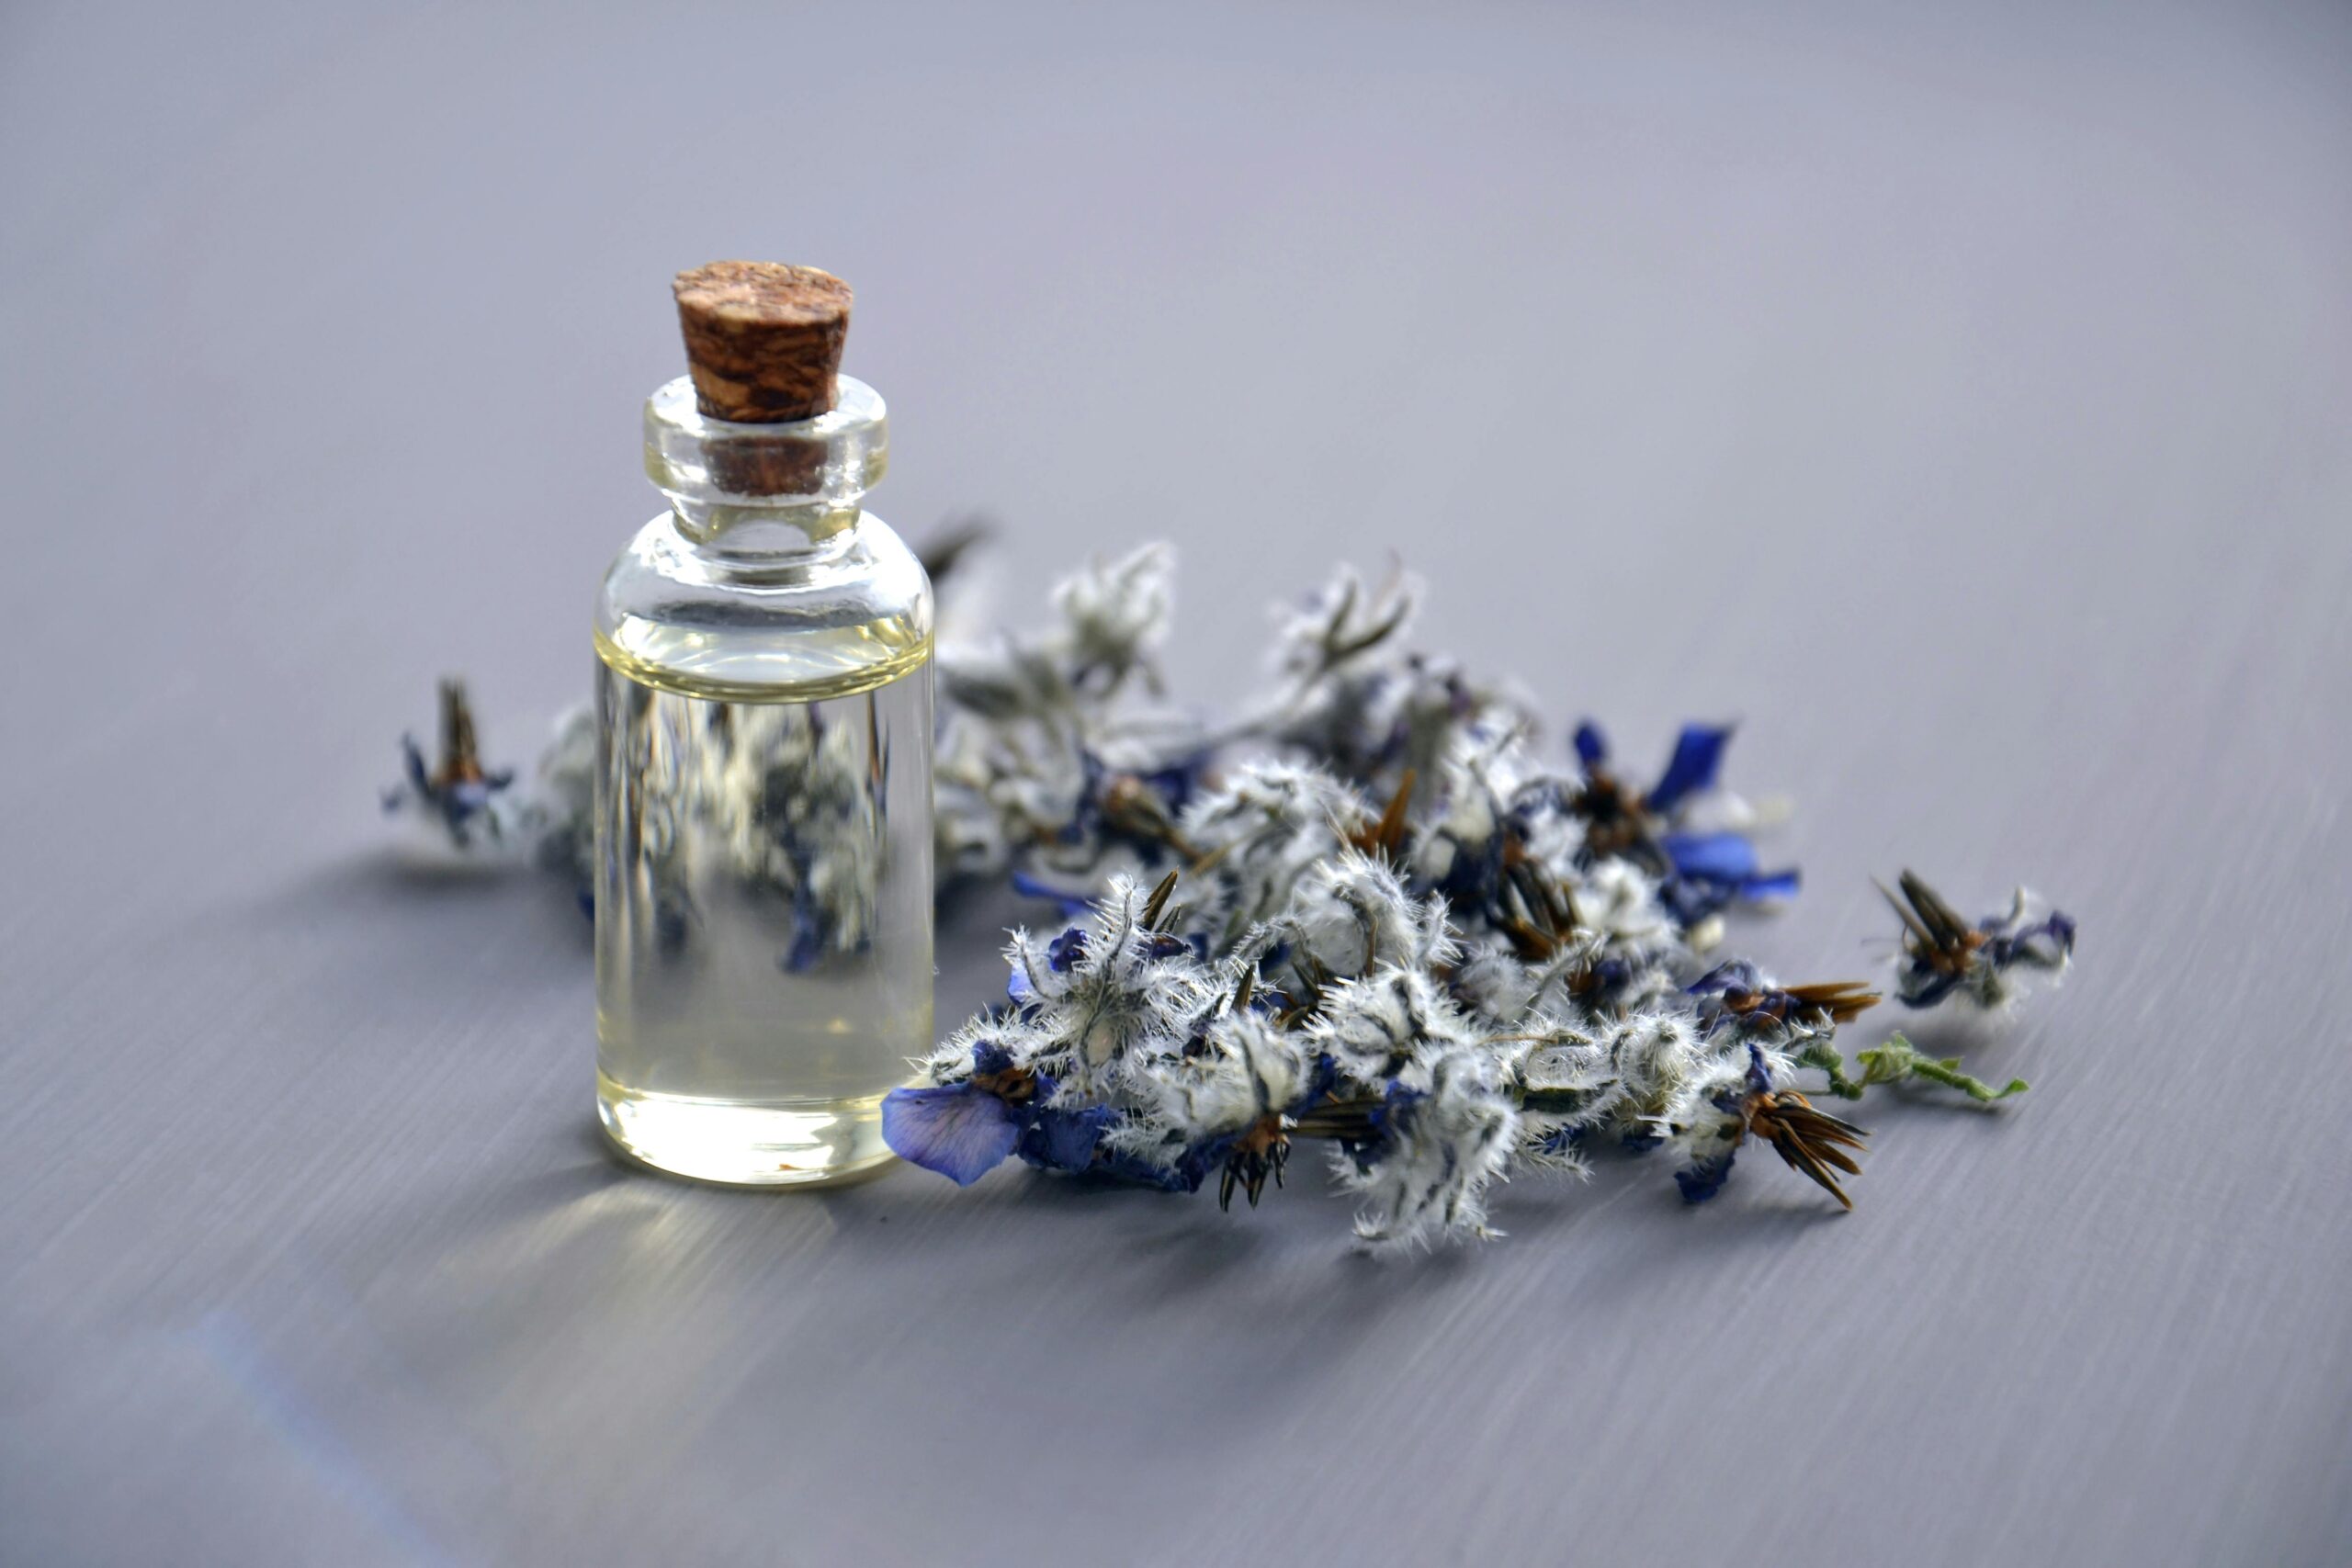 Lavendelöl gegen Mücken verwenden: So machen sie es richtig